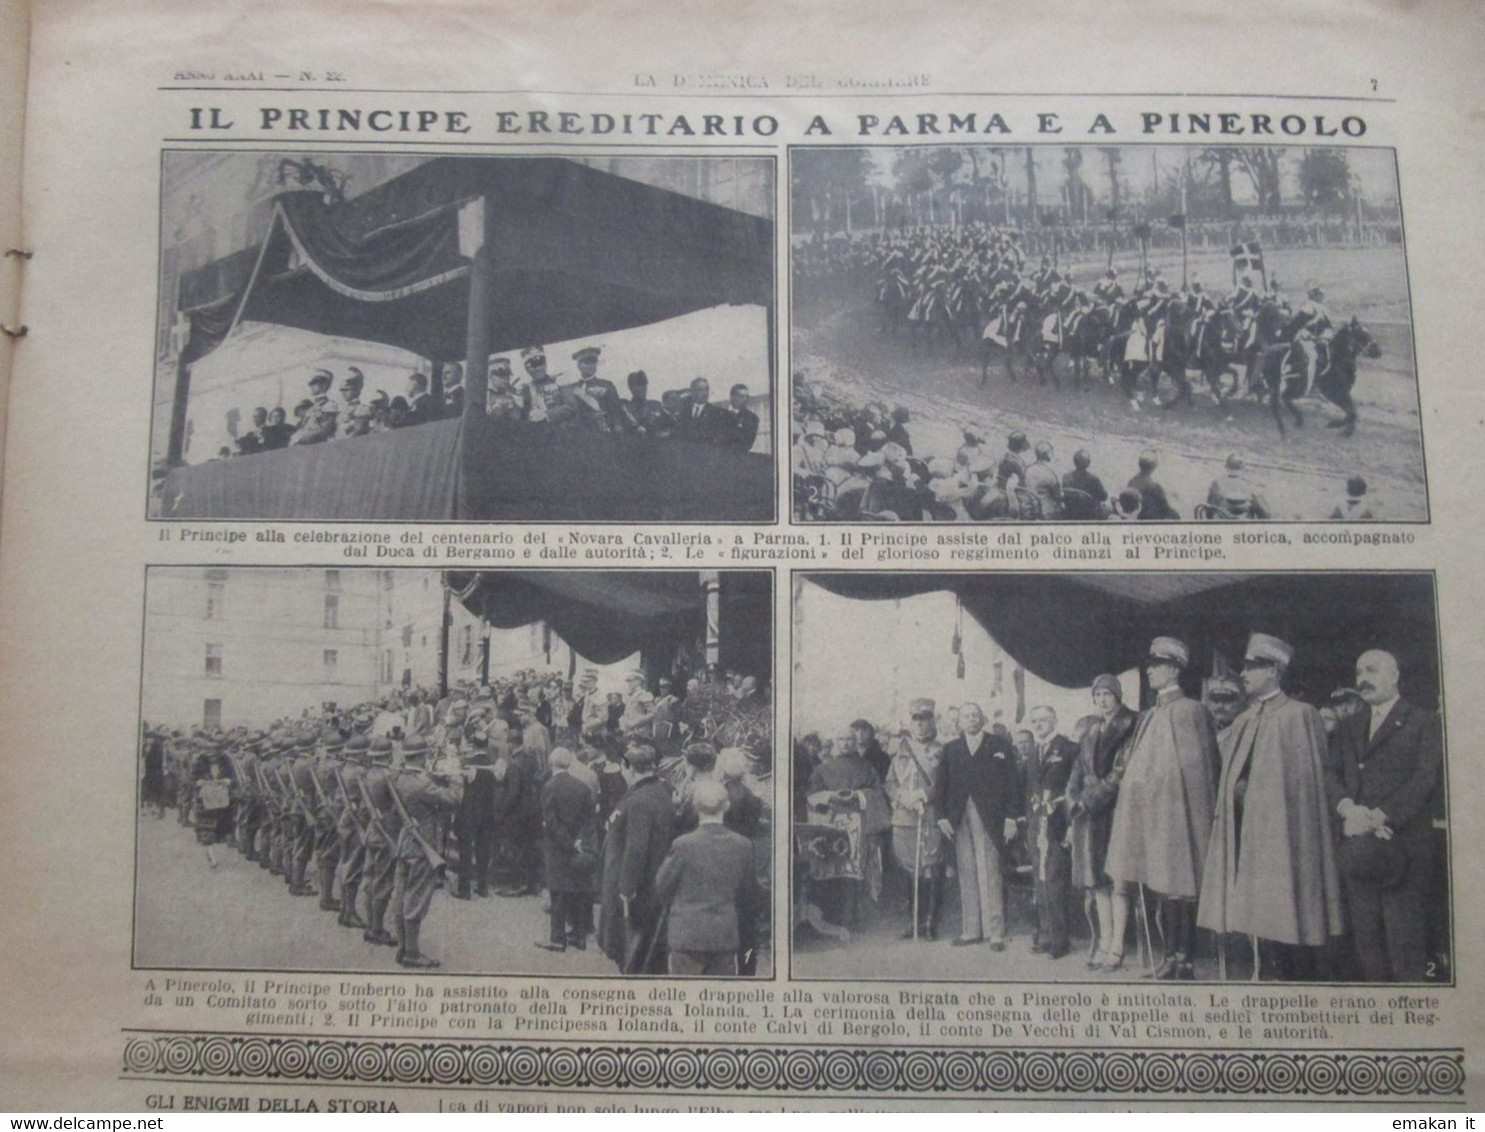 # DOMENICA DEL CORRIERE N 22 1929 SOVRANI D'ITALIA A RODI / CAPRINO VERONESE / PARMA / PINEROLO - Erstauflagen